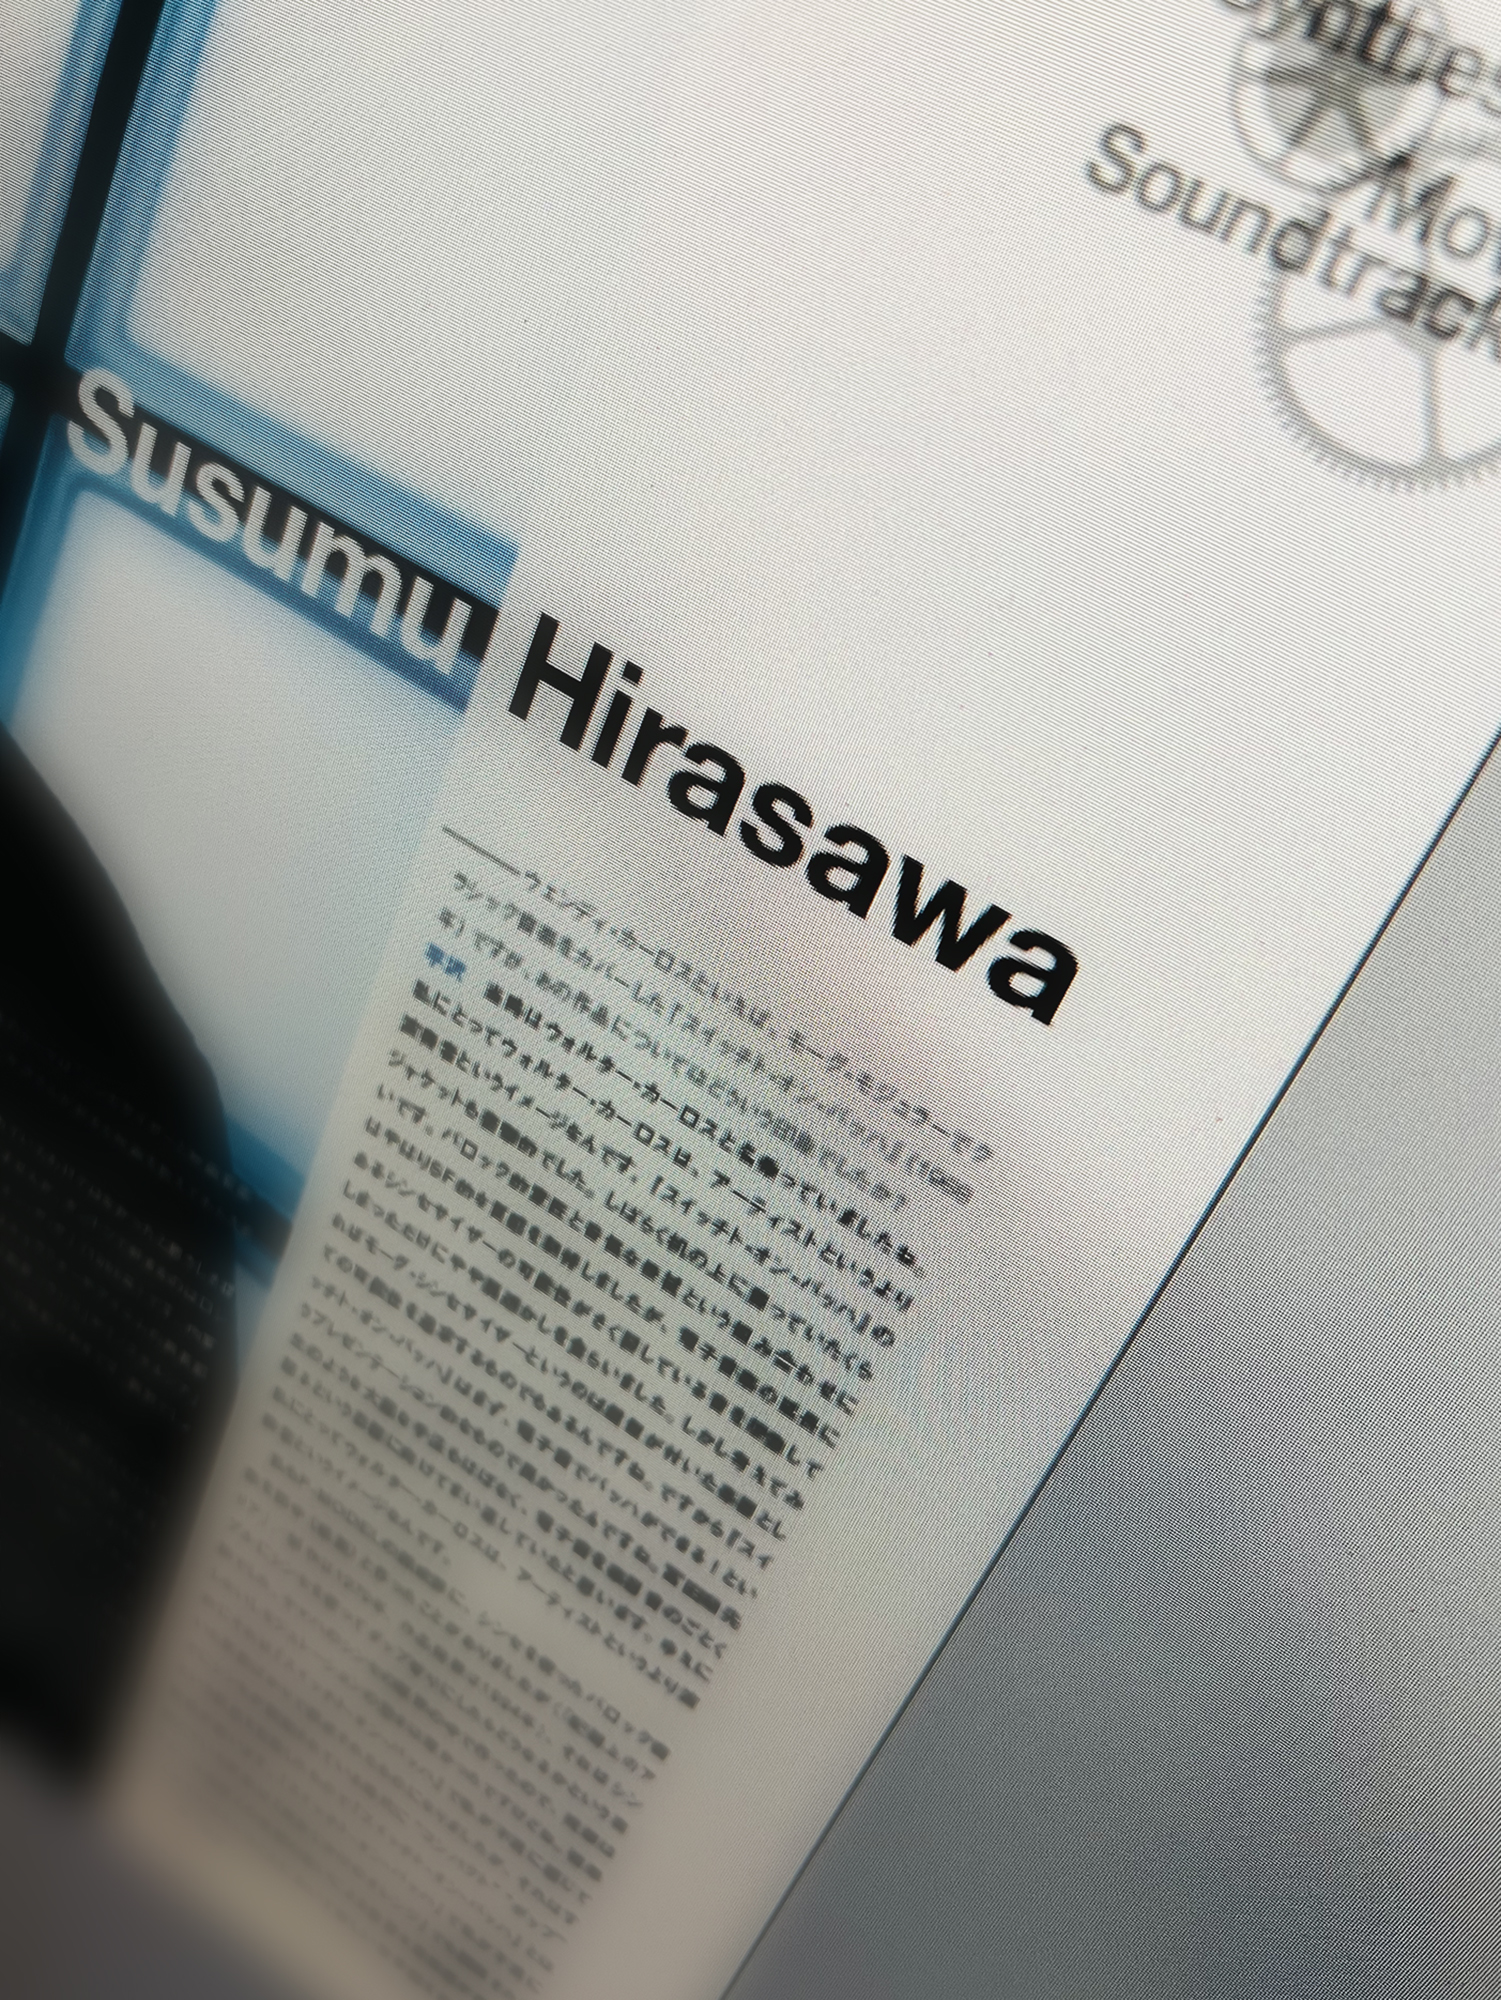 平沢進 公式サイト Hirasawa Info Twitter